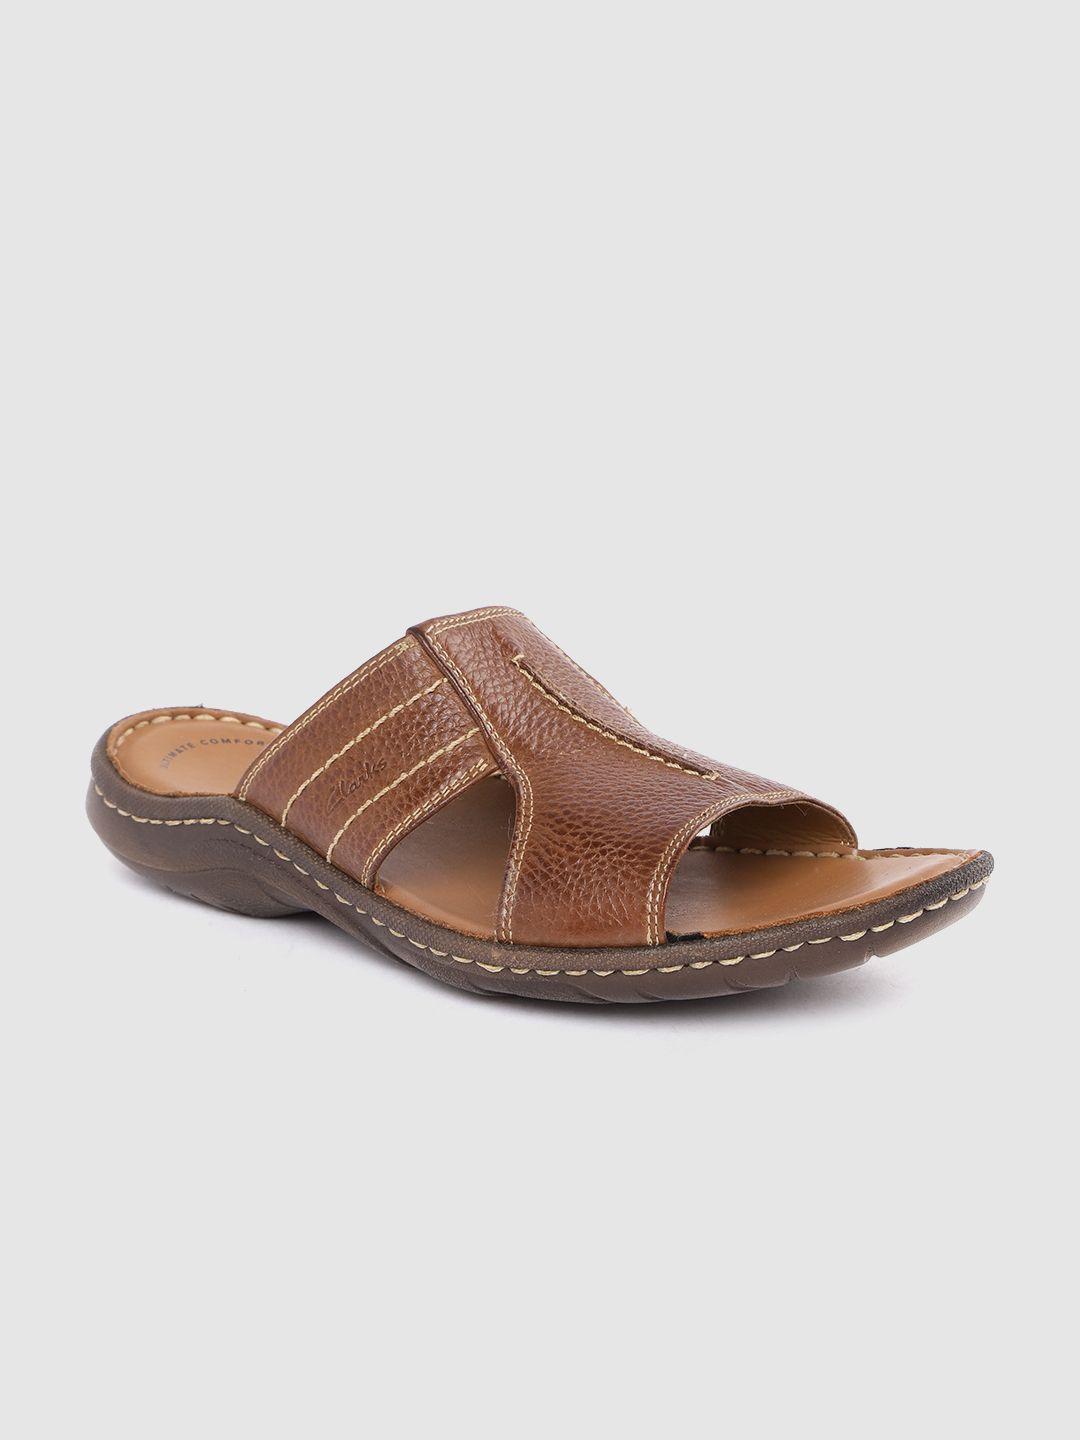 clarks men tan brown leather comfort sandals